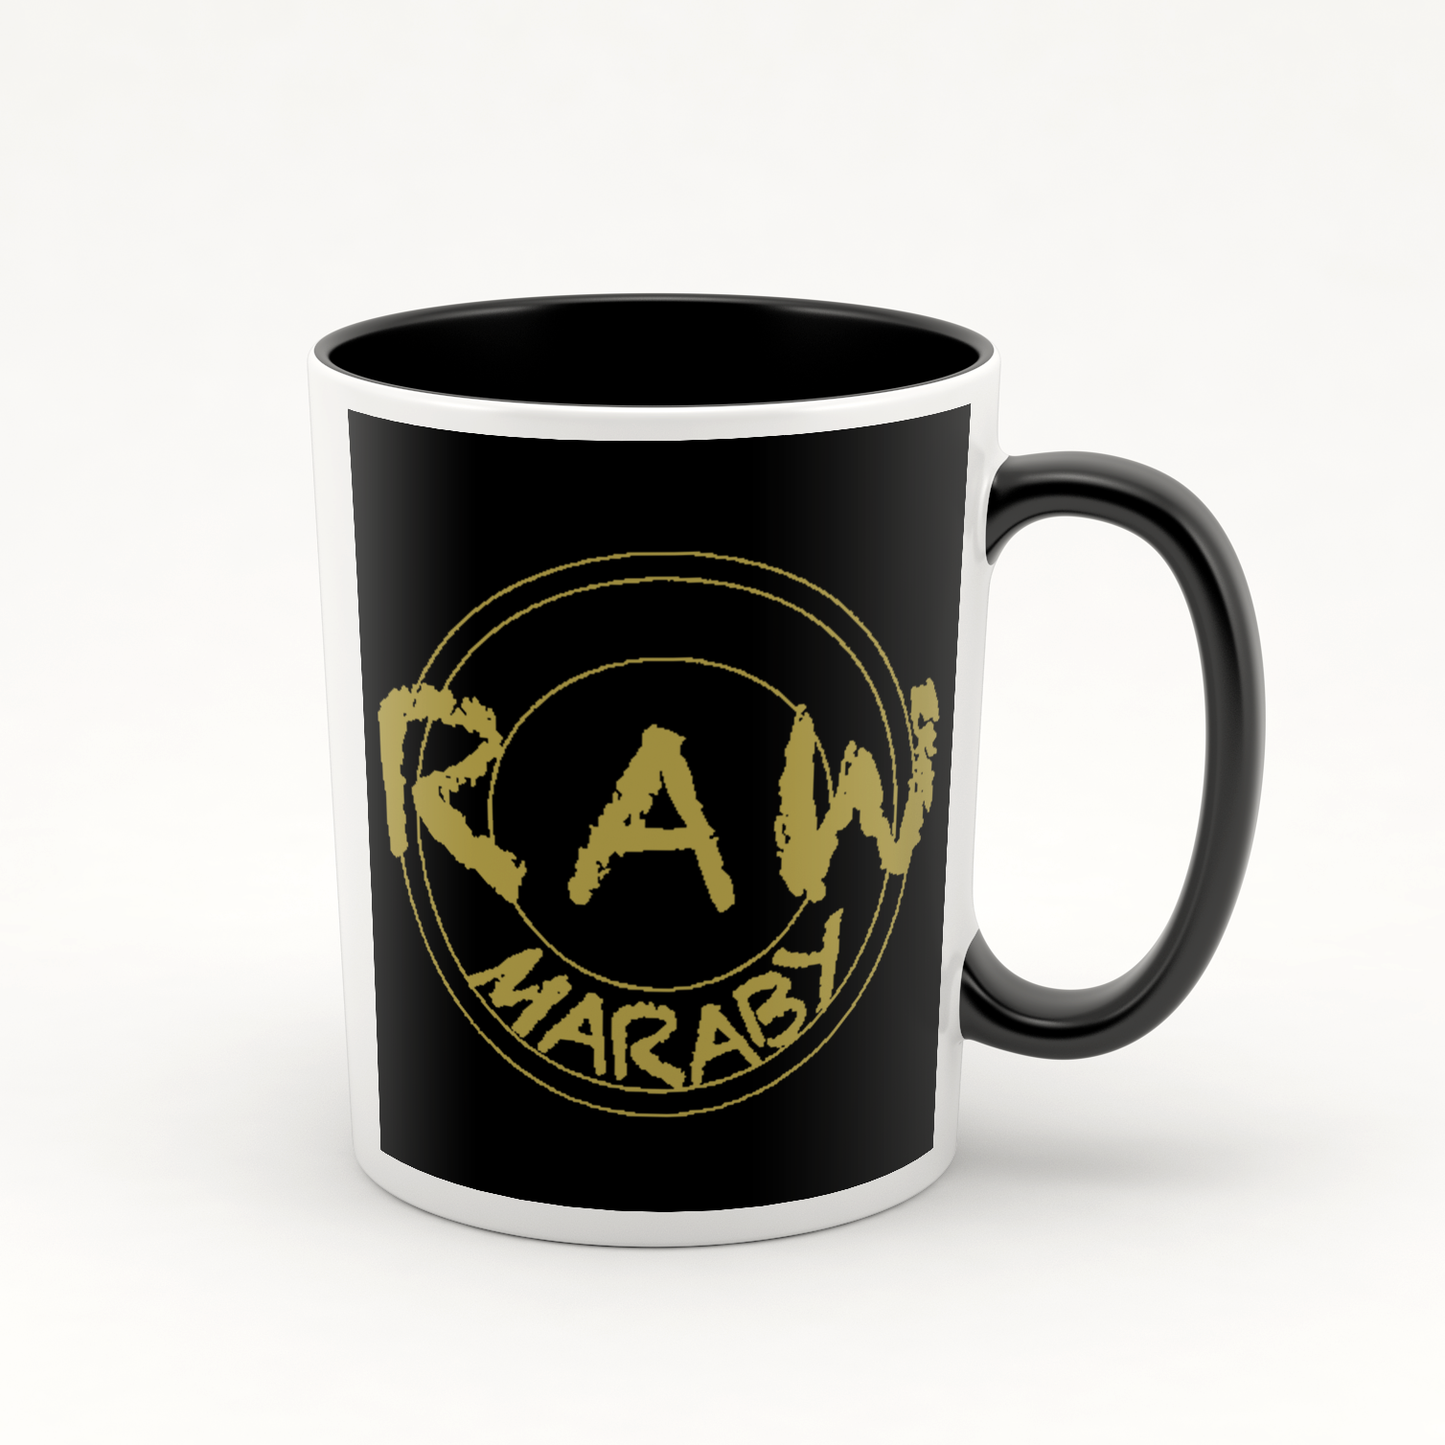 Raw Maraby Mug